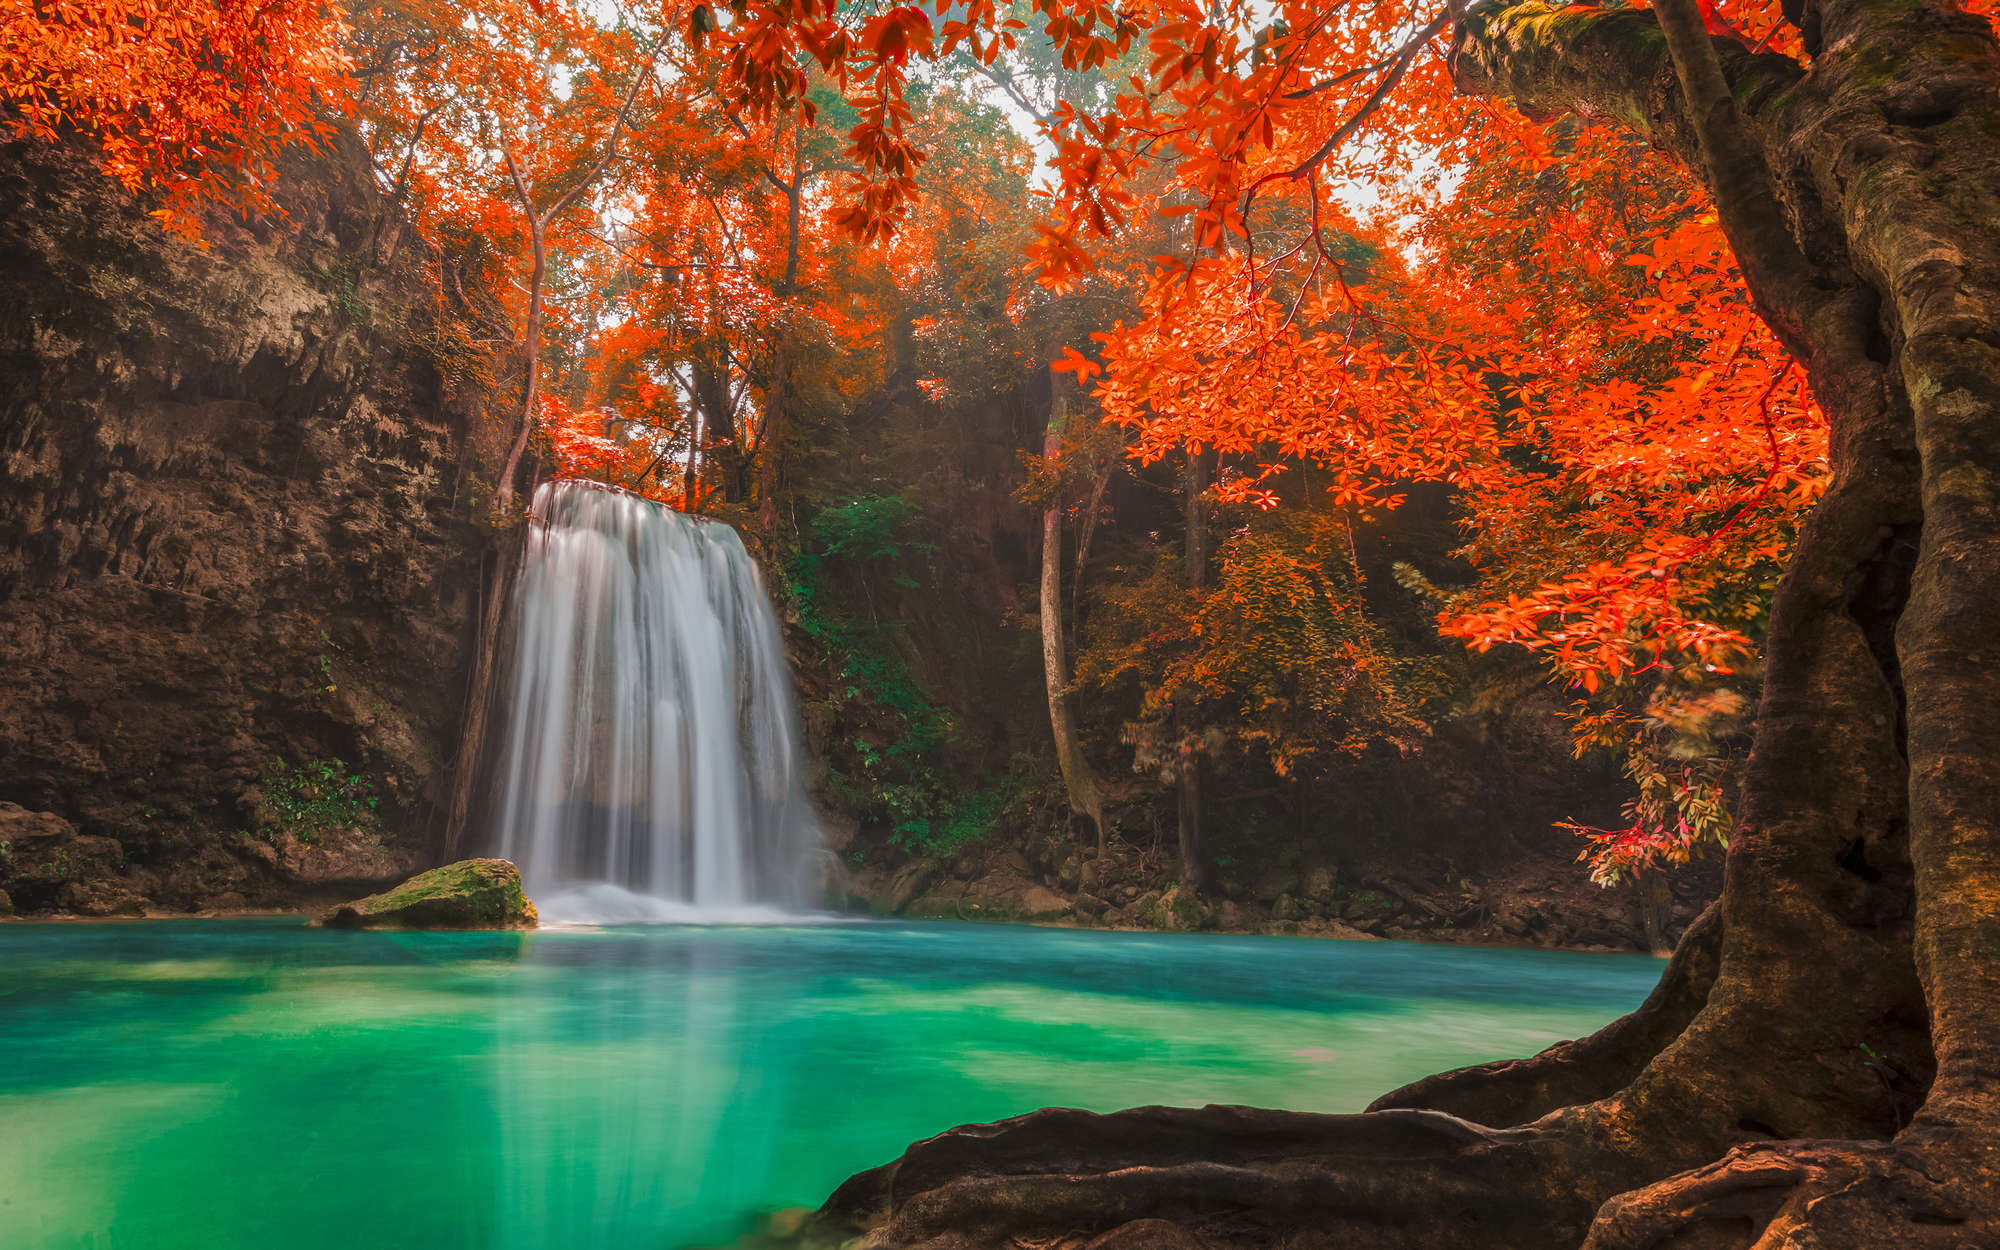             Natur Fototapete Wasserfall im Wald – Perlmutt Glattvlies
        